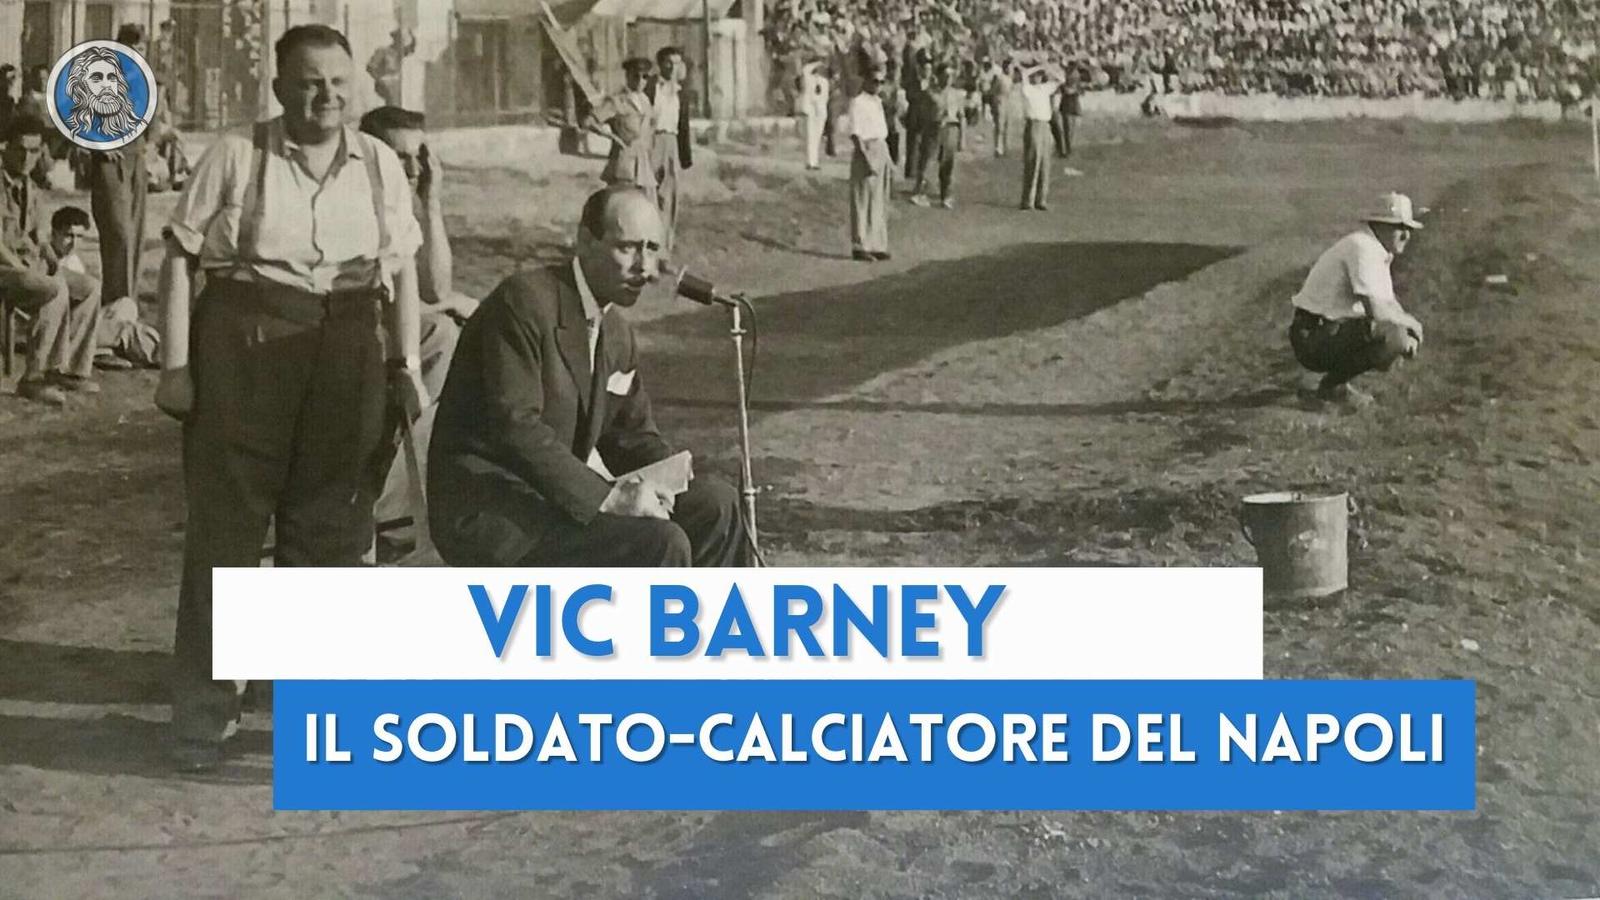 Vic Barney, il soldato che ricostruì lo stadio Collana